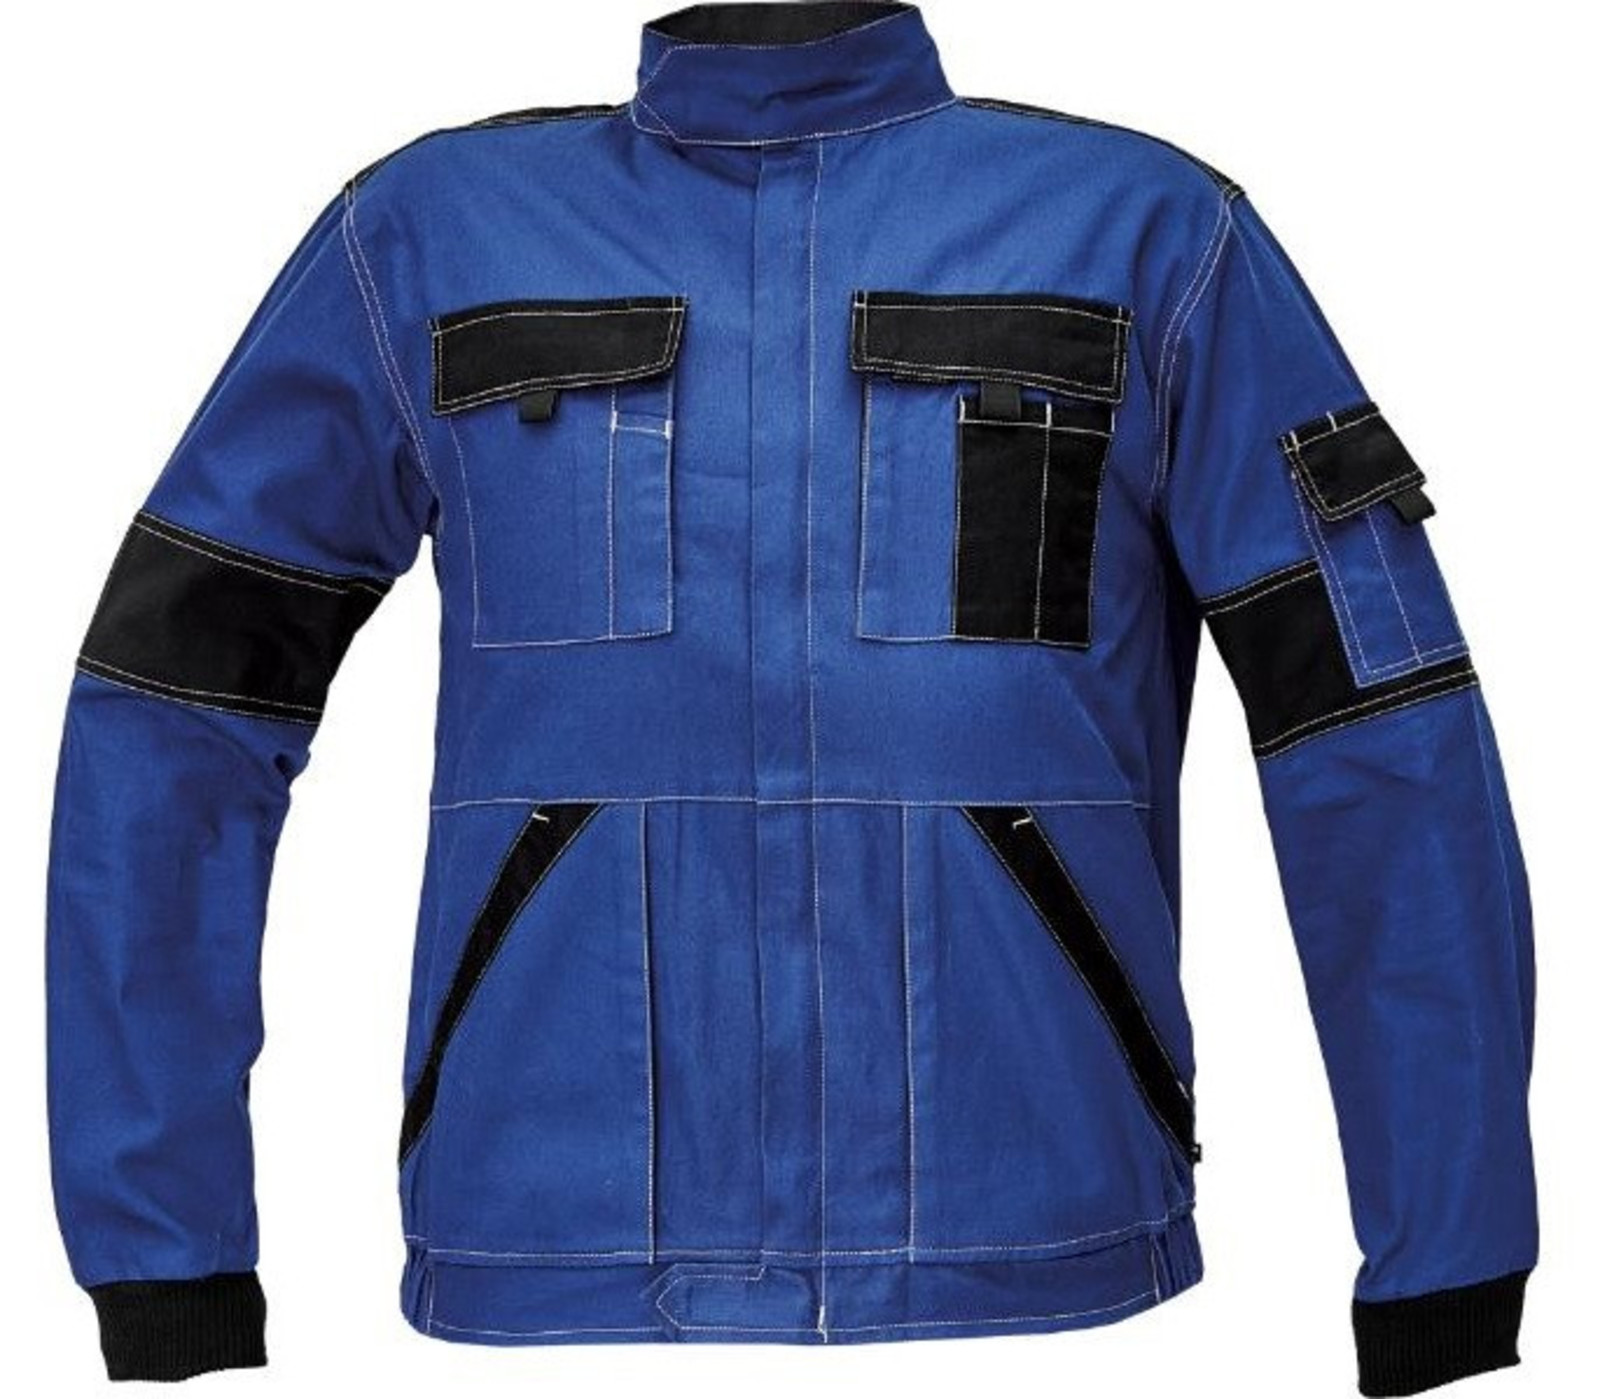 Tenšia bavlnená montérková bunda Max Summer  - veľkosť: 44, farba: modrá/čierna